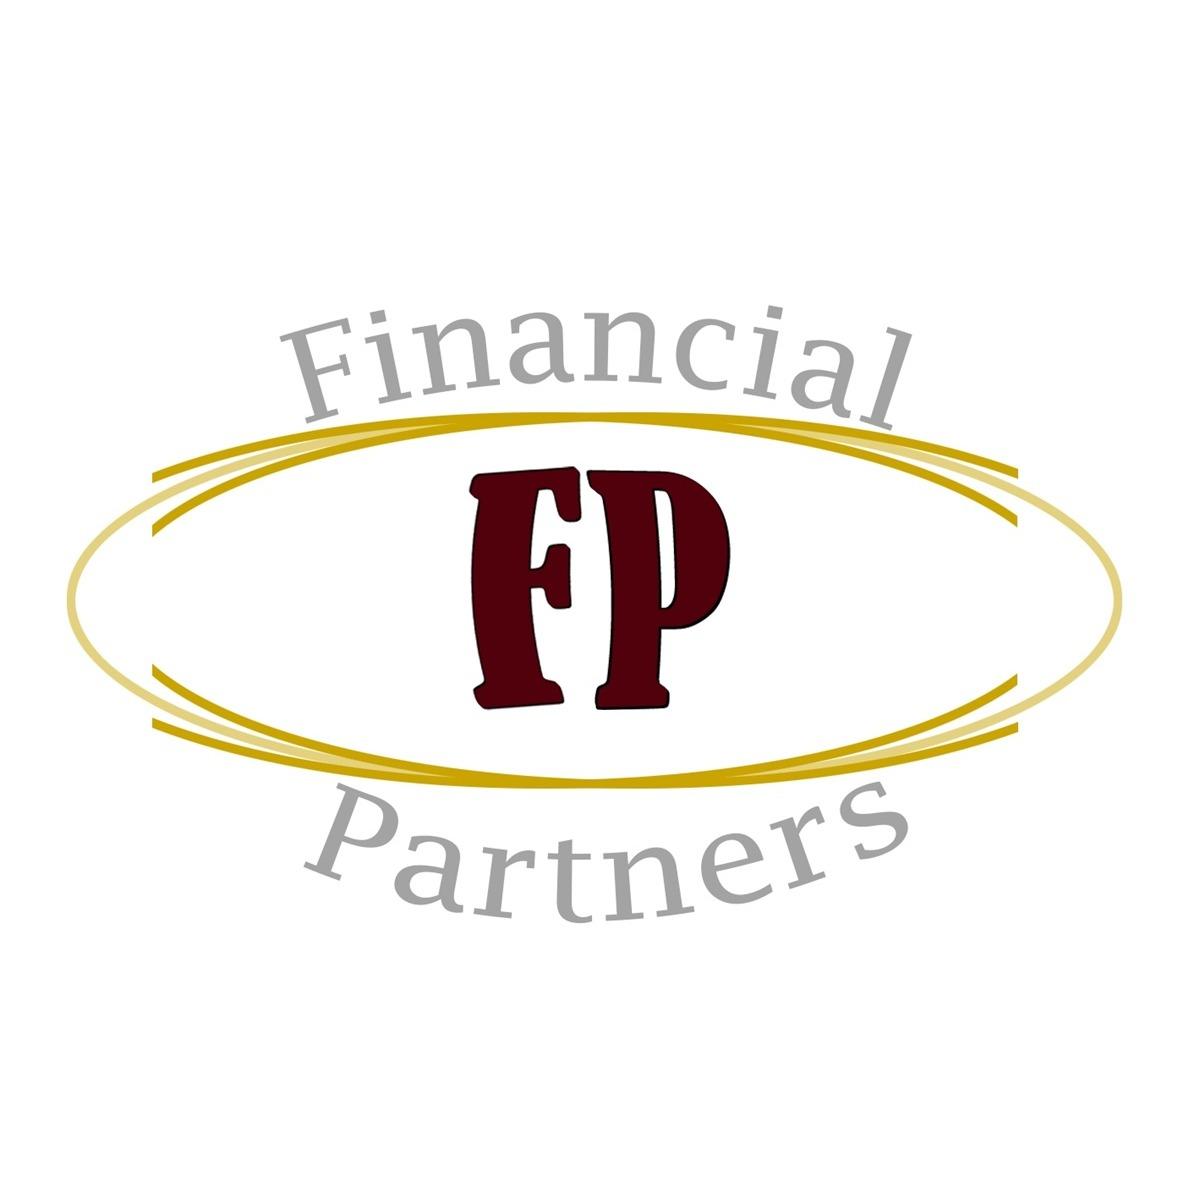 Financial Partners | Financial Advisor in Santa Fe,New Mexico